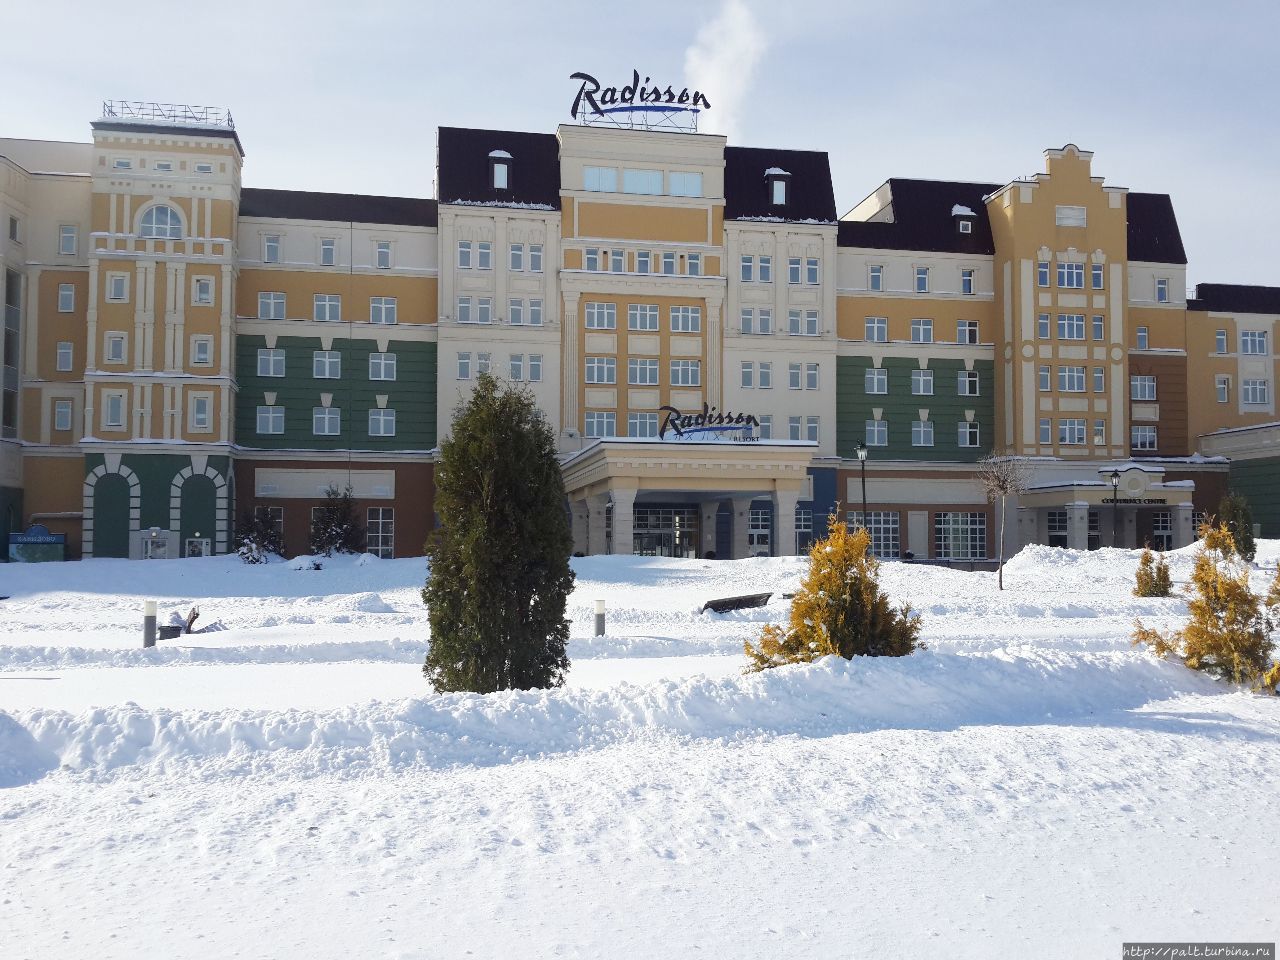 Radisson Resort Zavidovo. В этом корпусе находятся все рестораны и СПА с бассейном. Вид со стороны подъездной дороги Вараксино, Россия